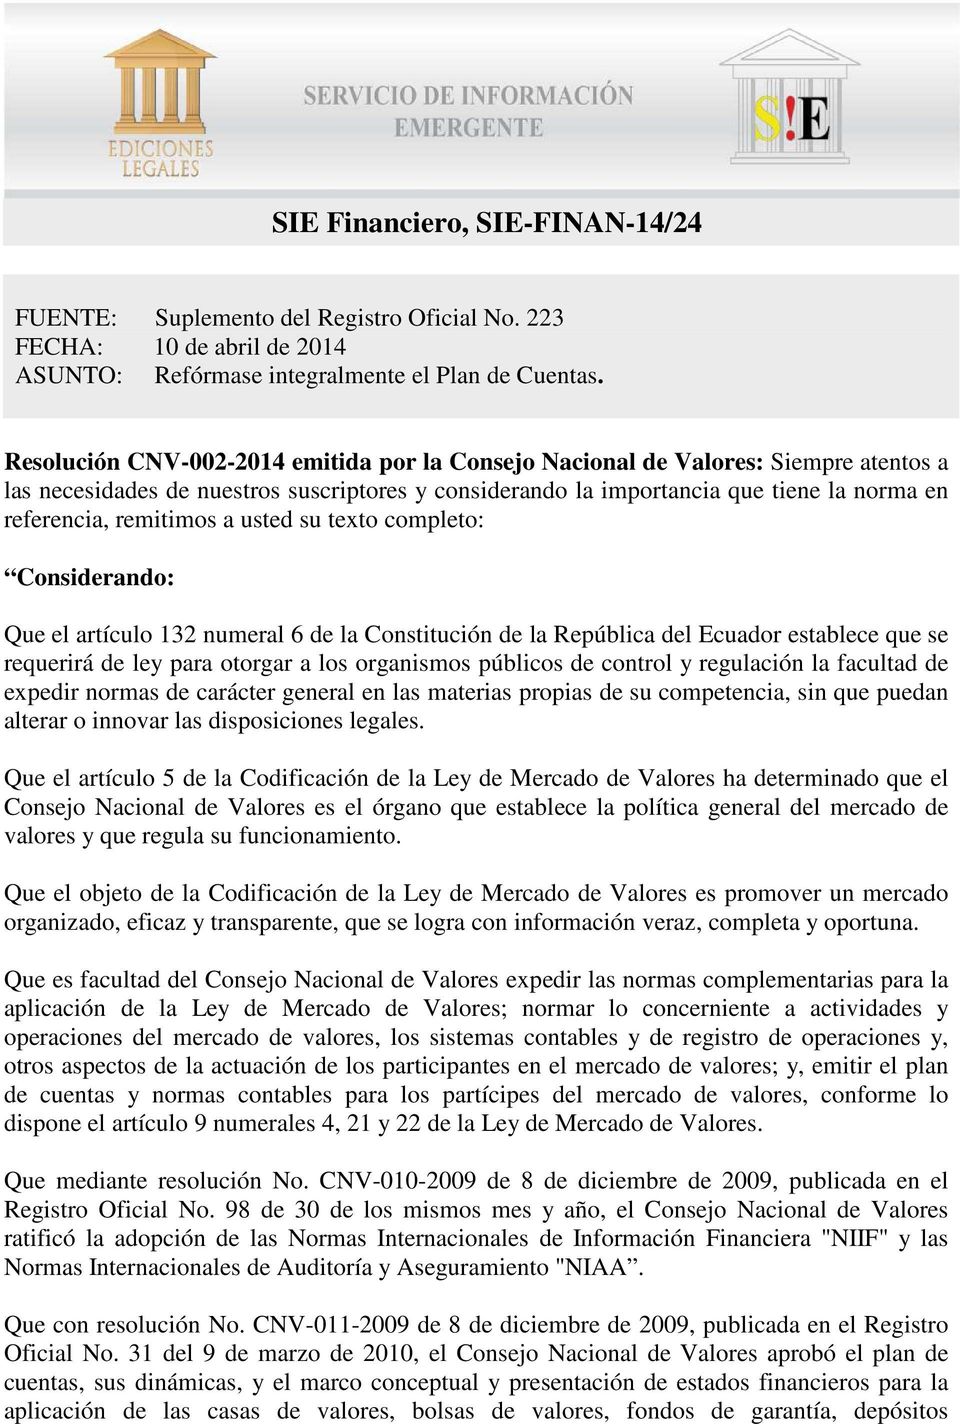 remitimos a usted su texto completo: Considerando: Que el artículo 132 numeral 6 de la Constitución de la República del Ecuador establece que se requerirá de ley para otorgar a los organismos